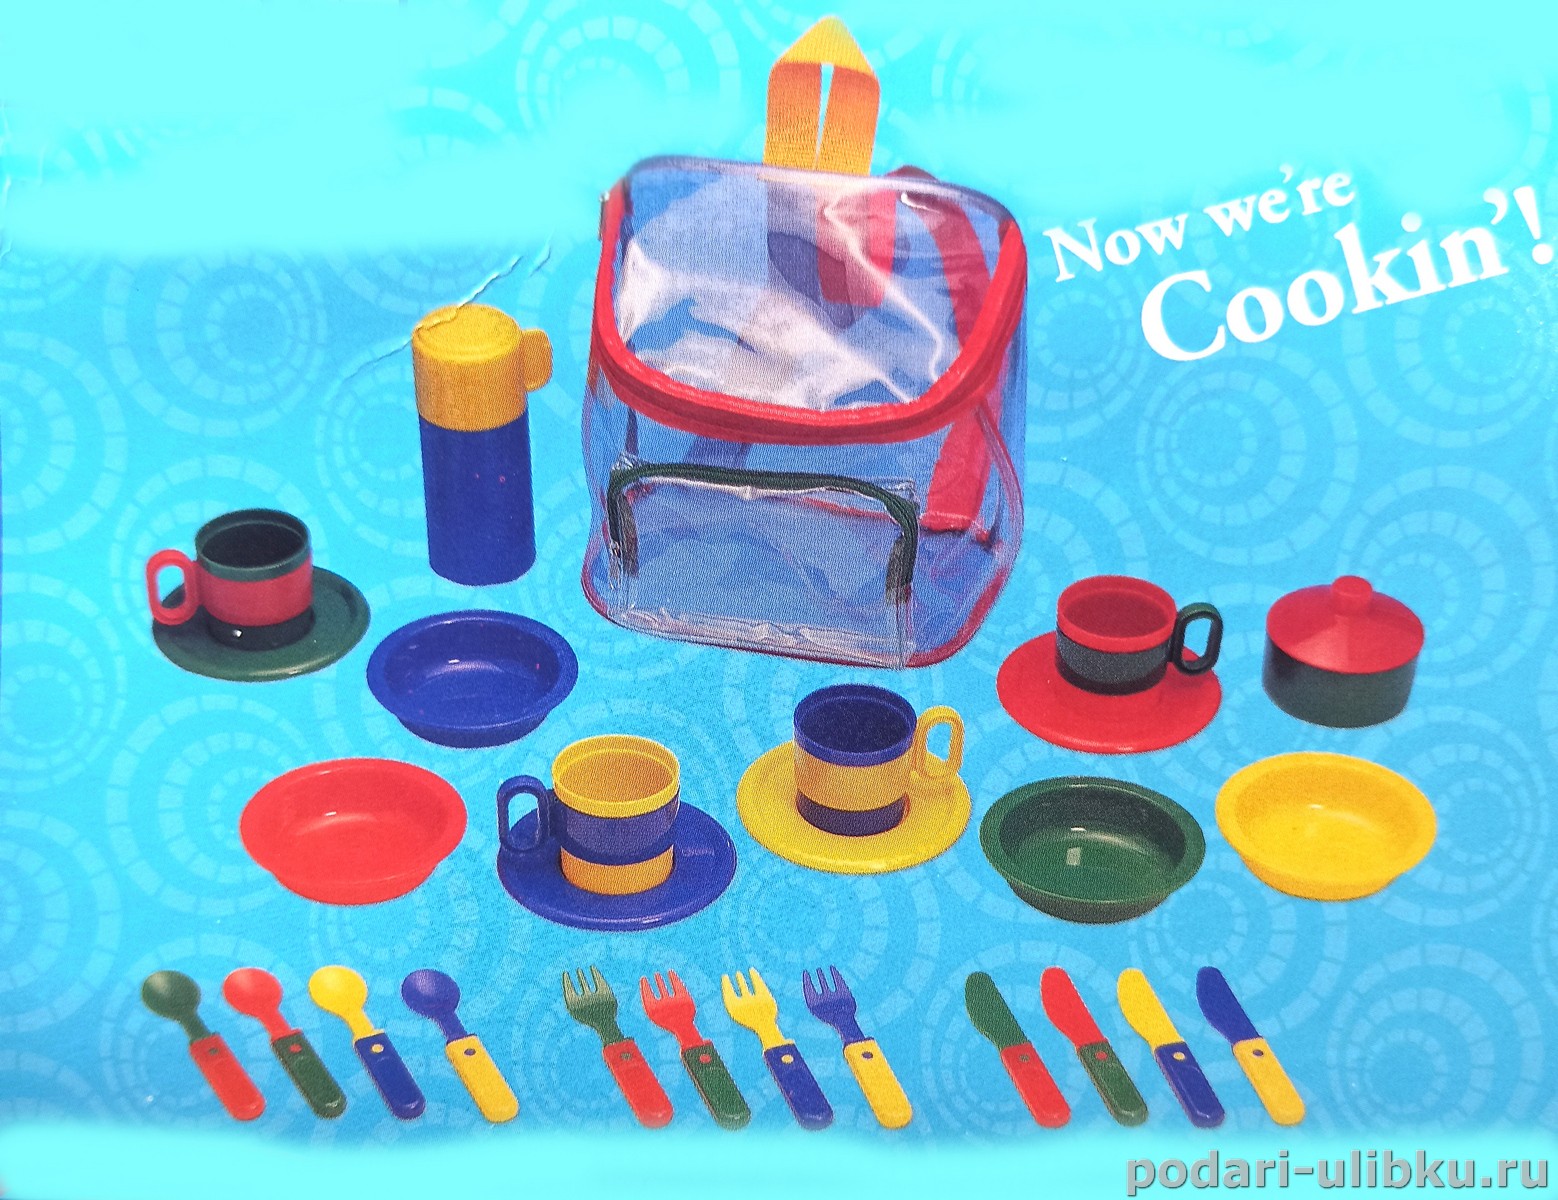 картинка Набор посуды для детской кухни "Мини" в рюкзачке на 4 персоны. — Подари Улыбку